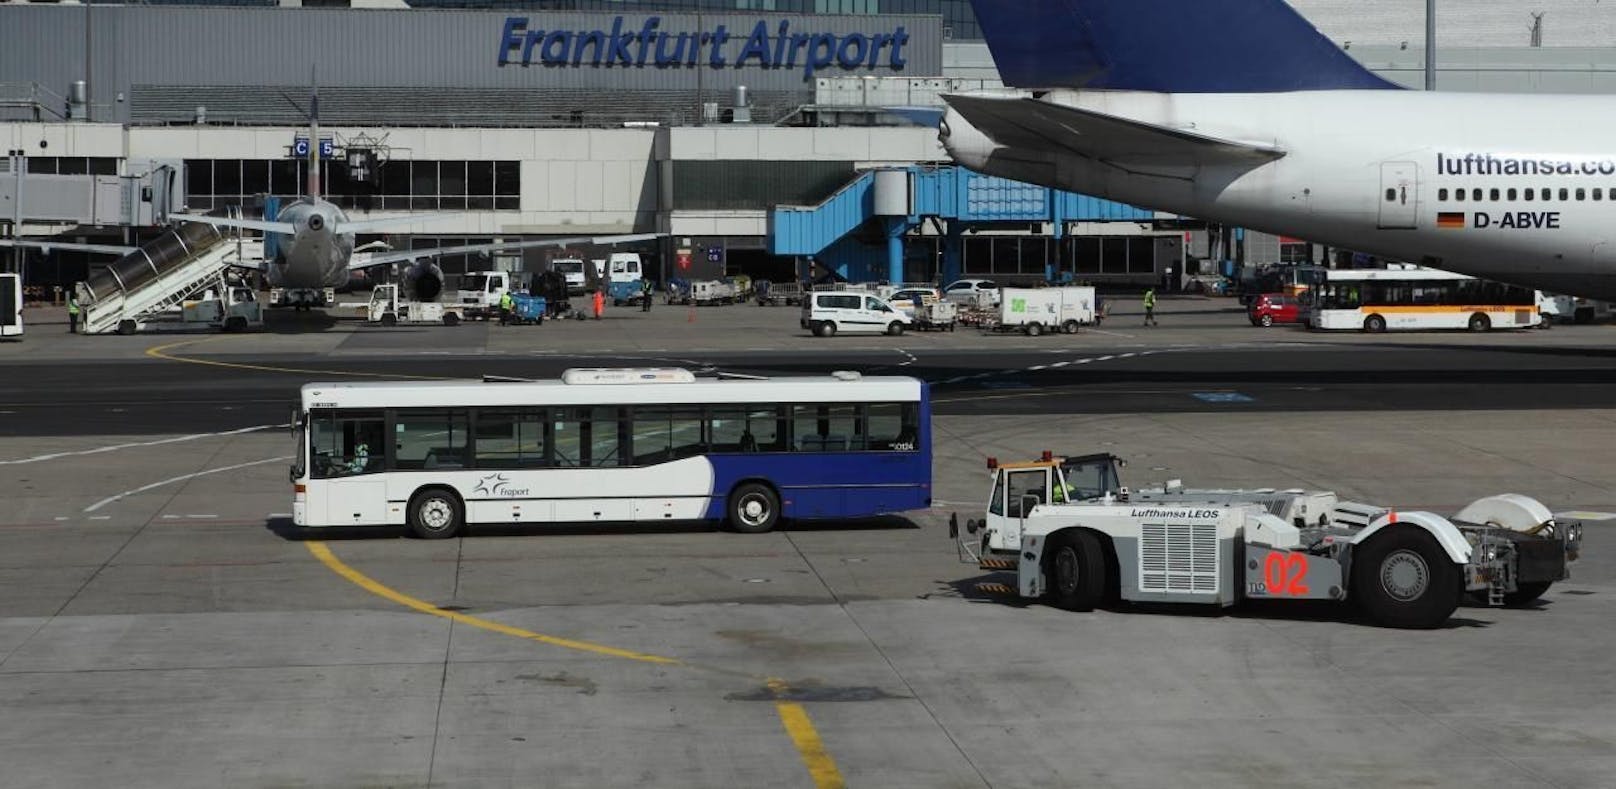 14 Verletzte nach Unfall am Frankfurter Flughafen